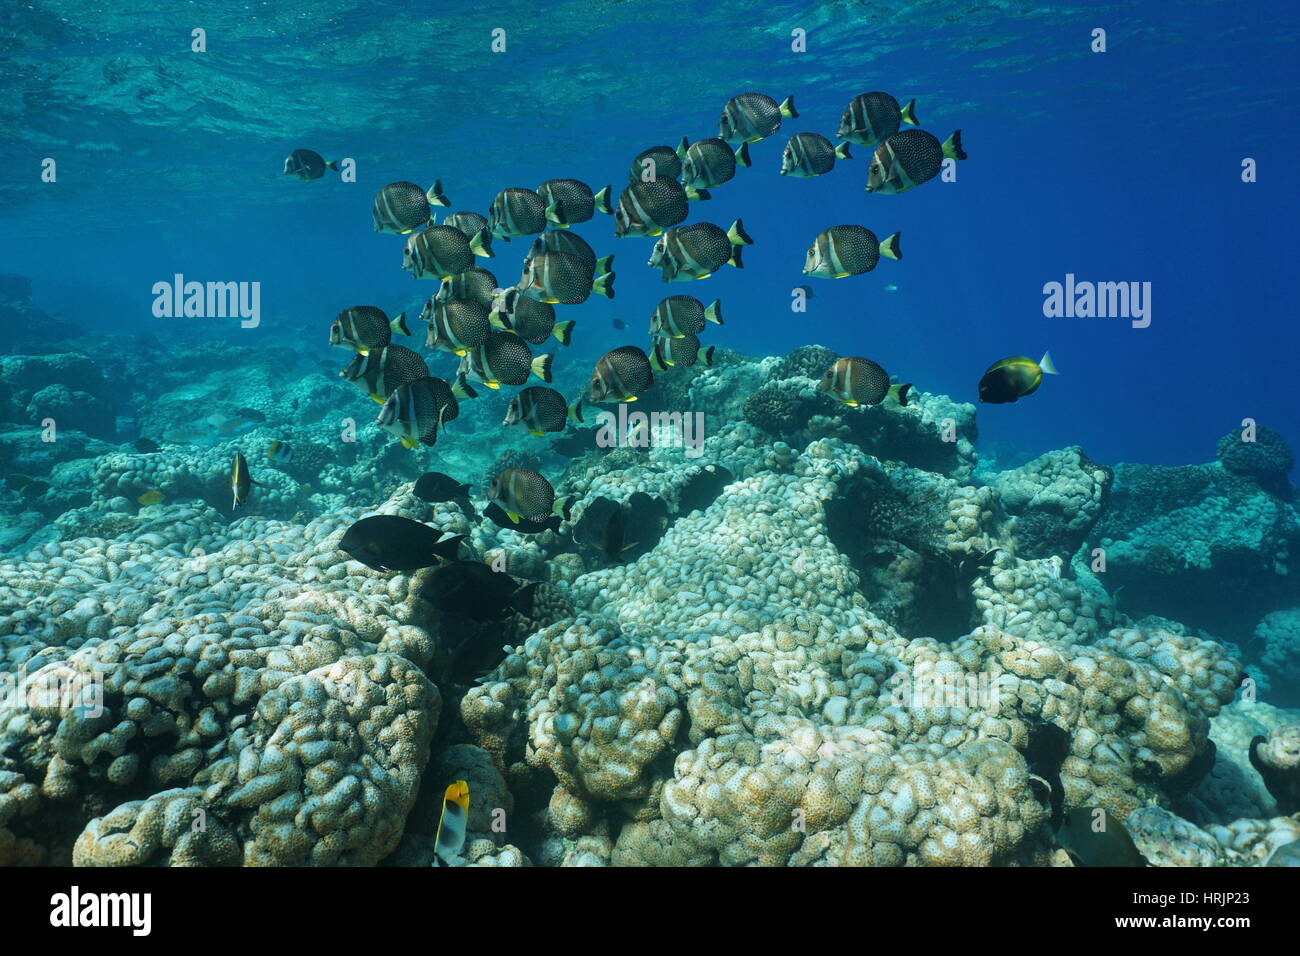 La vita subacquea una scuola di pesce whitespotted, surgeonfish Acanthurus guttatus, su una scogliera di corallo, Rangiroa, Tuamotu, oceano pacifico, Polinesia Francese Foto Stock